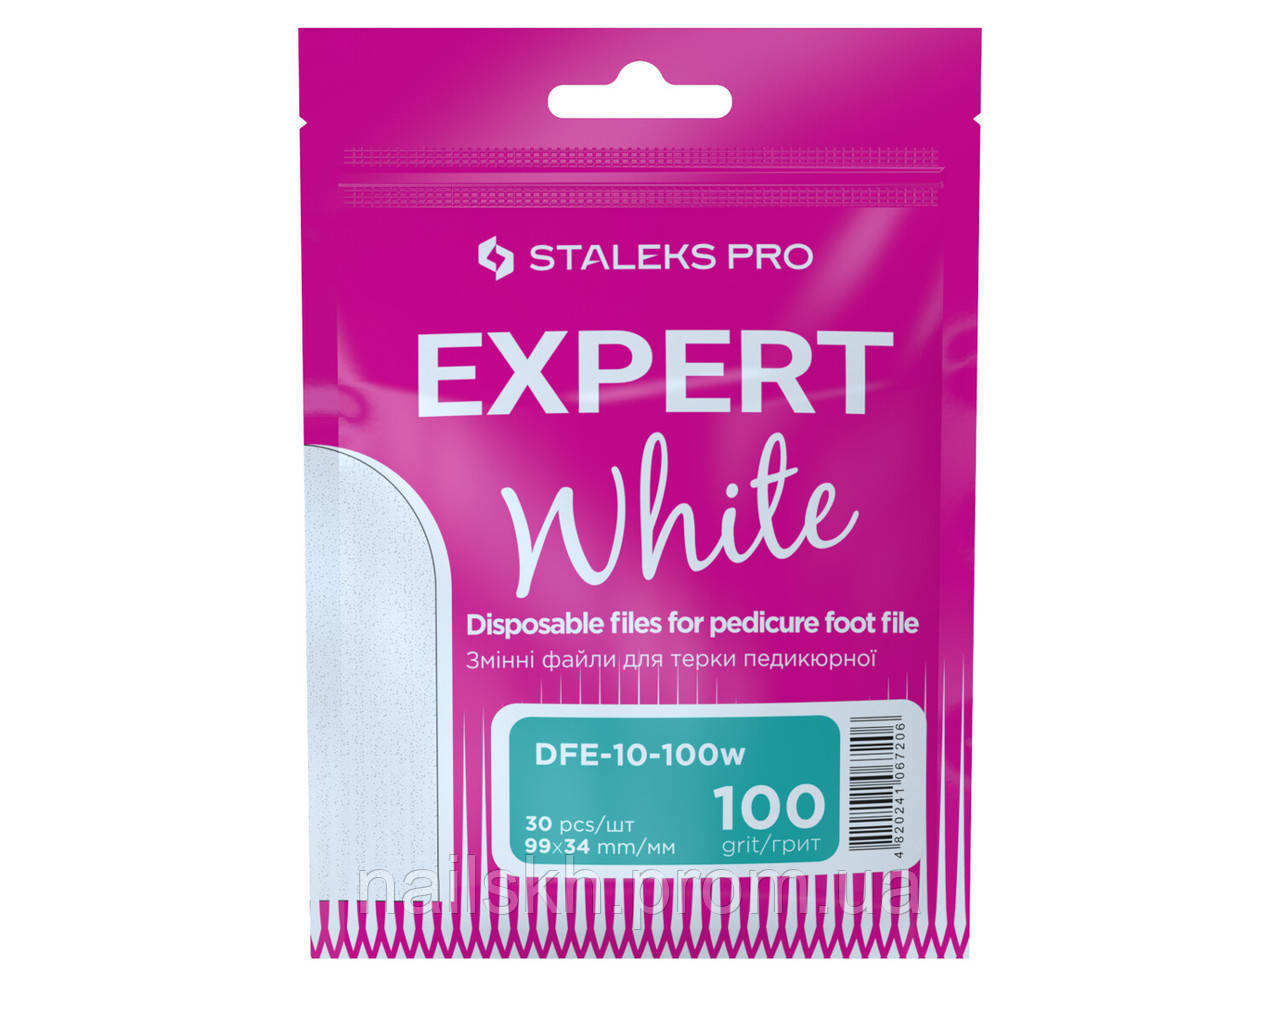 Staleks Pro DFE-10-100w Змінні файли для тертки педикюрної 100 грит (30 шт) - білі